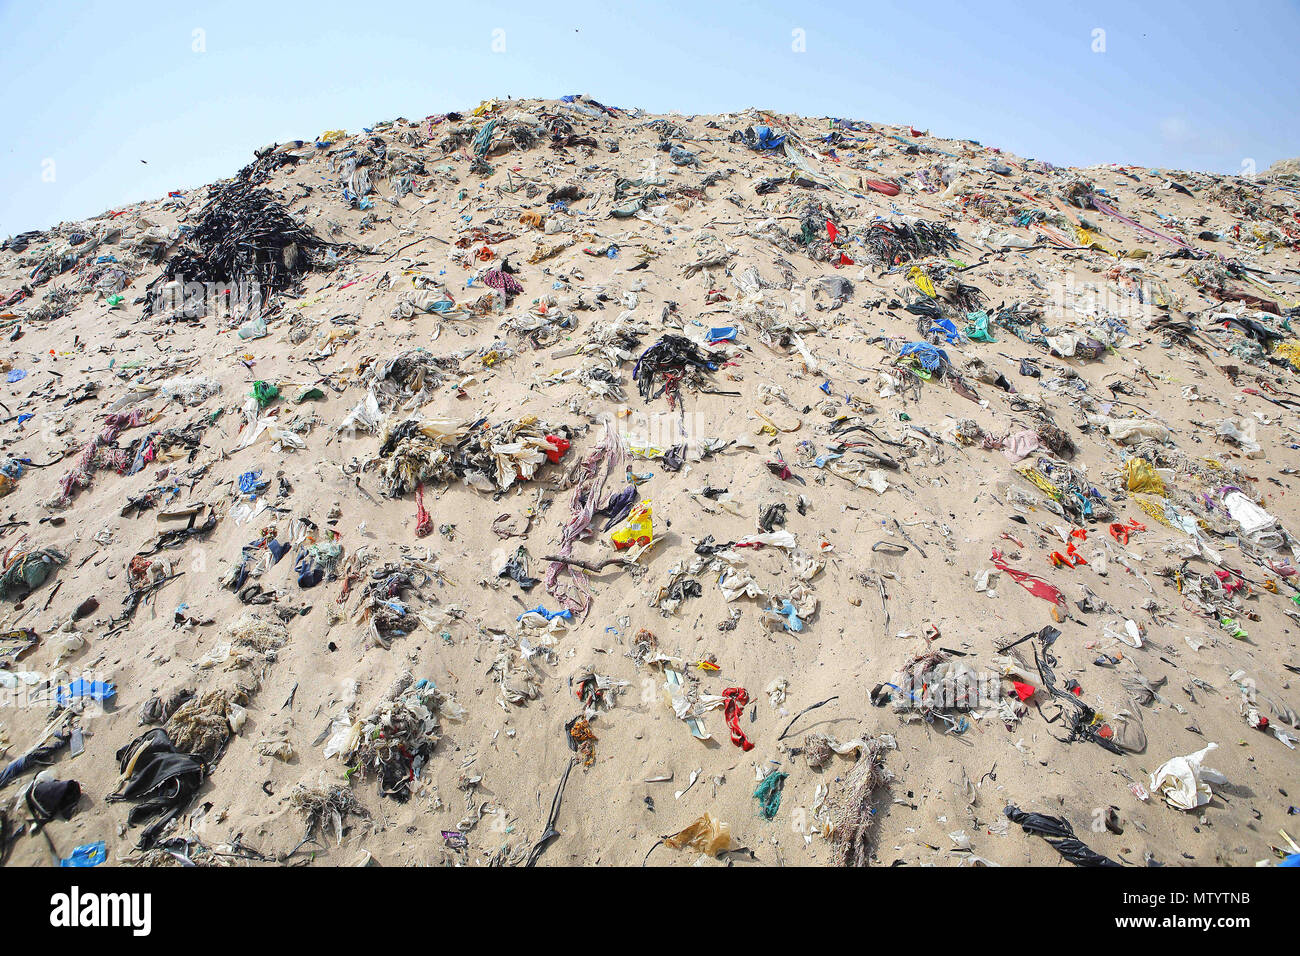 Mumbai, Inde. 31 mai, 2018. 01 juin 2018, plage de Versova - Bombay : l'Inde.des tas de mensonge en plastique empilés à la plage de Versova à Mumbai.Environnement crusader Afroz Shah & citoyens bénévoles ont été le nettoyage de la plage de Versova depuis les 2 dernières années pour débarrasser la plage de plastique mais tous les jours des tonnes de déchets en plastique s'enlève à terre à partir de la mer d'Oman.Notre planète est la noyade dans la pollution plastique.Aujourd'hui, nous produisons environ 300 millions de tonnes de plastique chaque année. C'est presque équivalent au poids de l'ensemble de la population humaine.Seulement 9  % de tous les déchets en plastique jamais produite a été recycler Banque D'Images